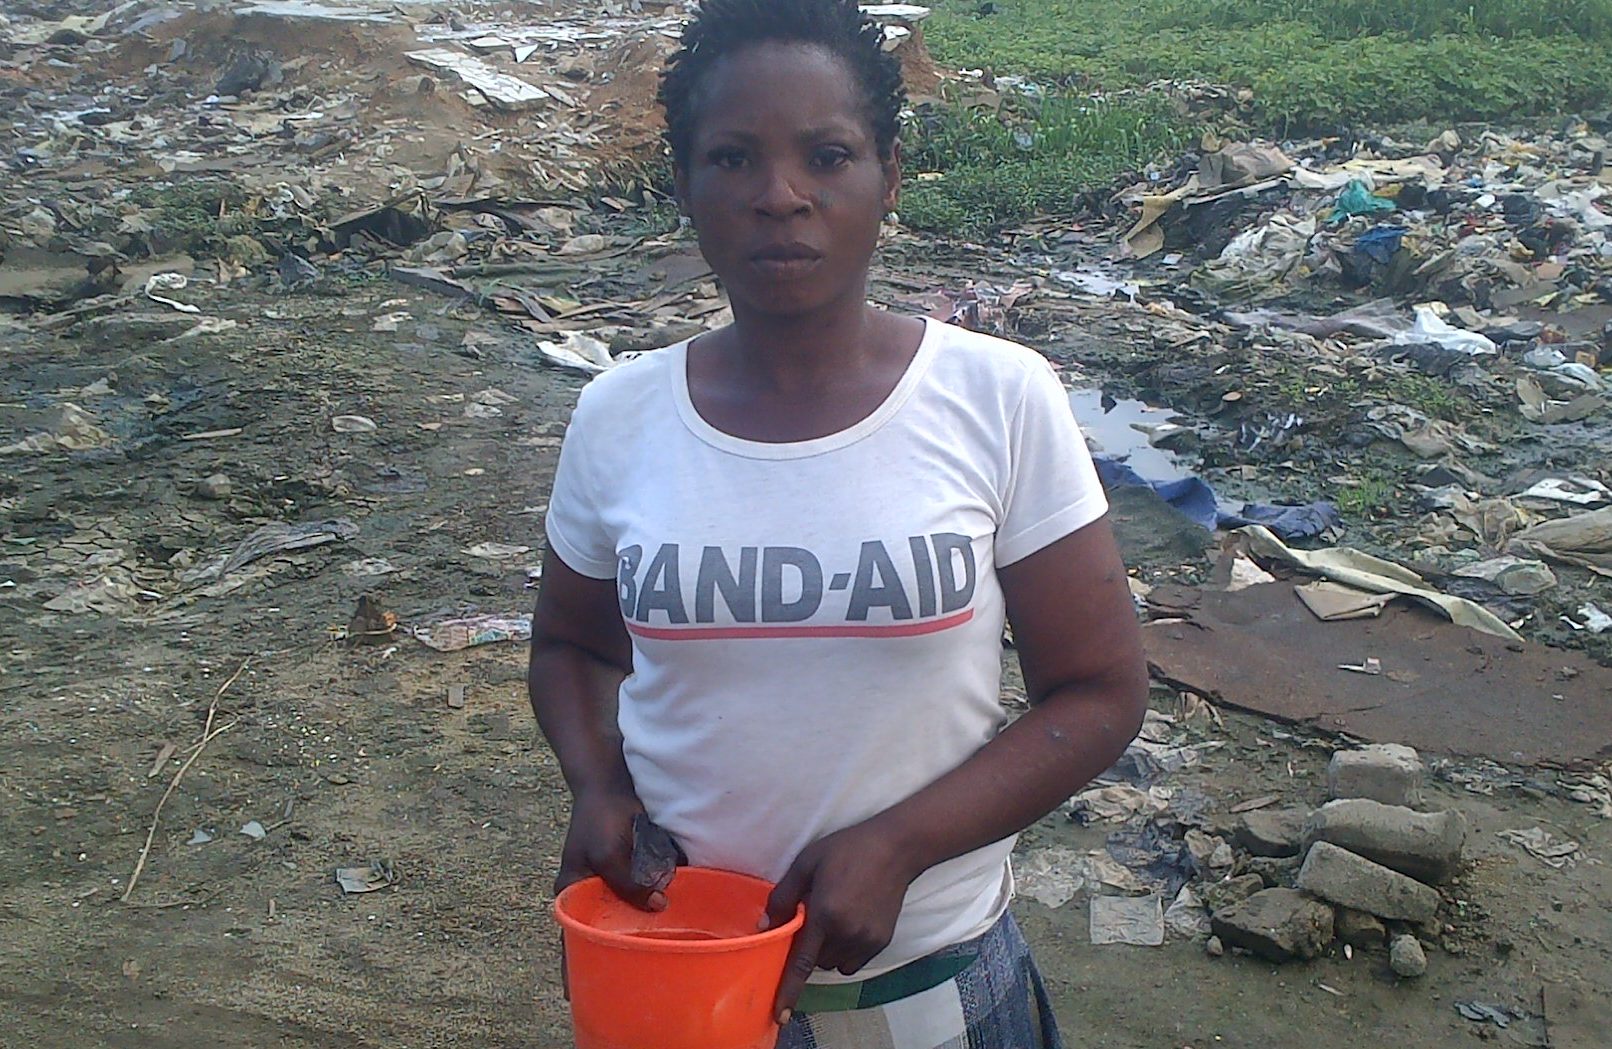 Aftermath of demolition: Lagos residents still stranded